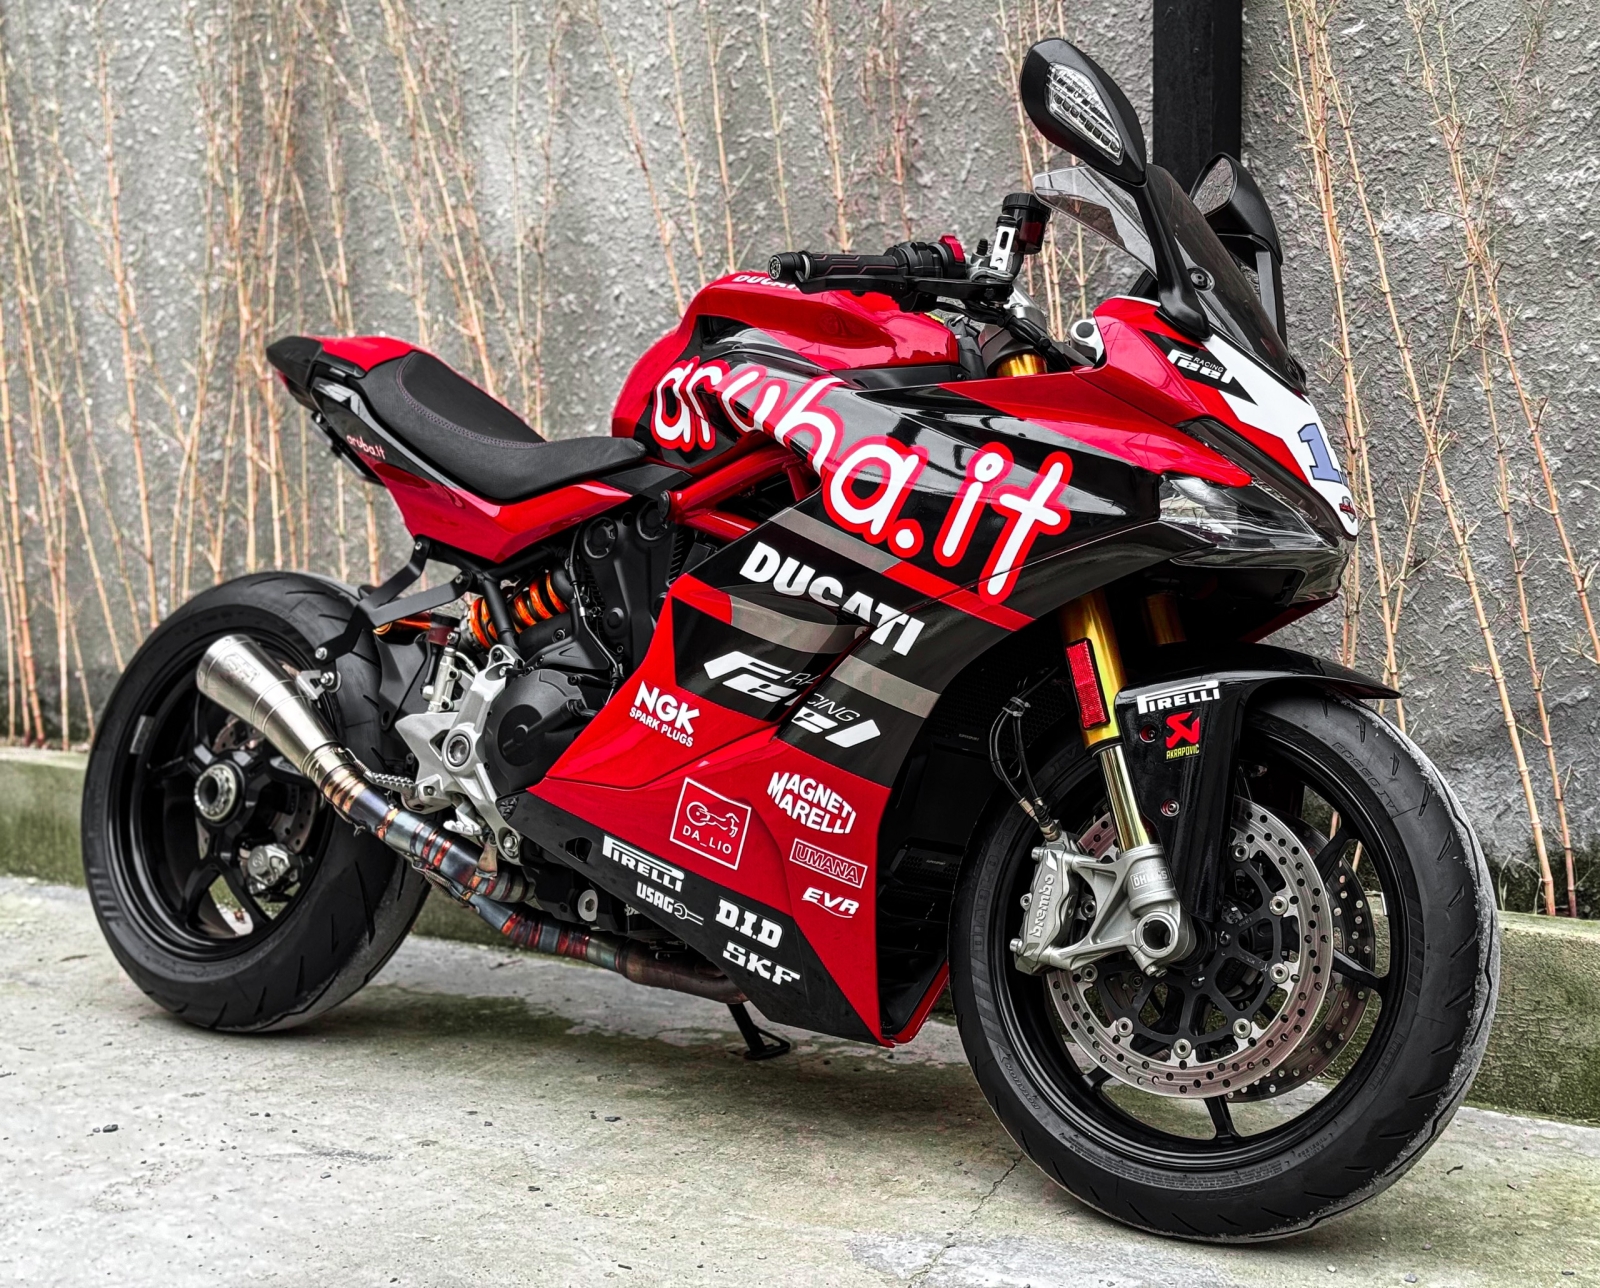 548 . Ducati Super sport 939 (Supersport) model 2020 [xe cọp]